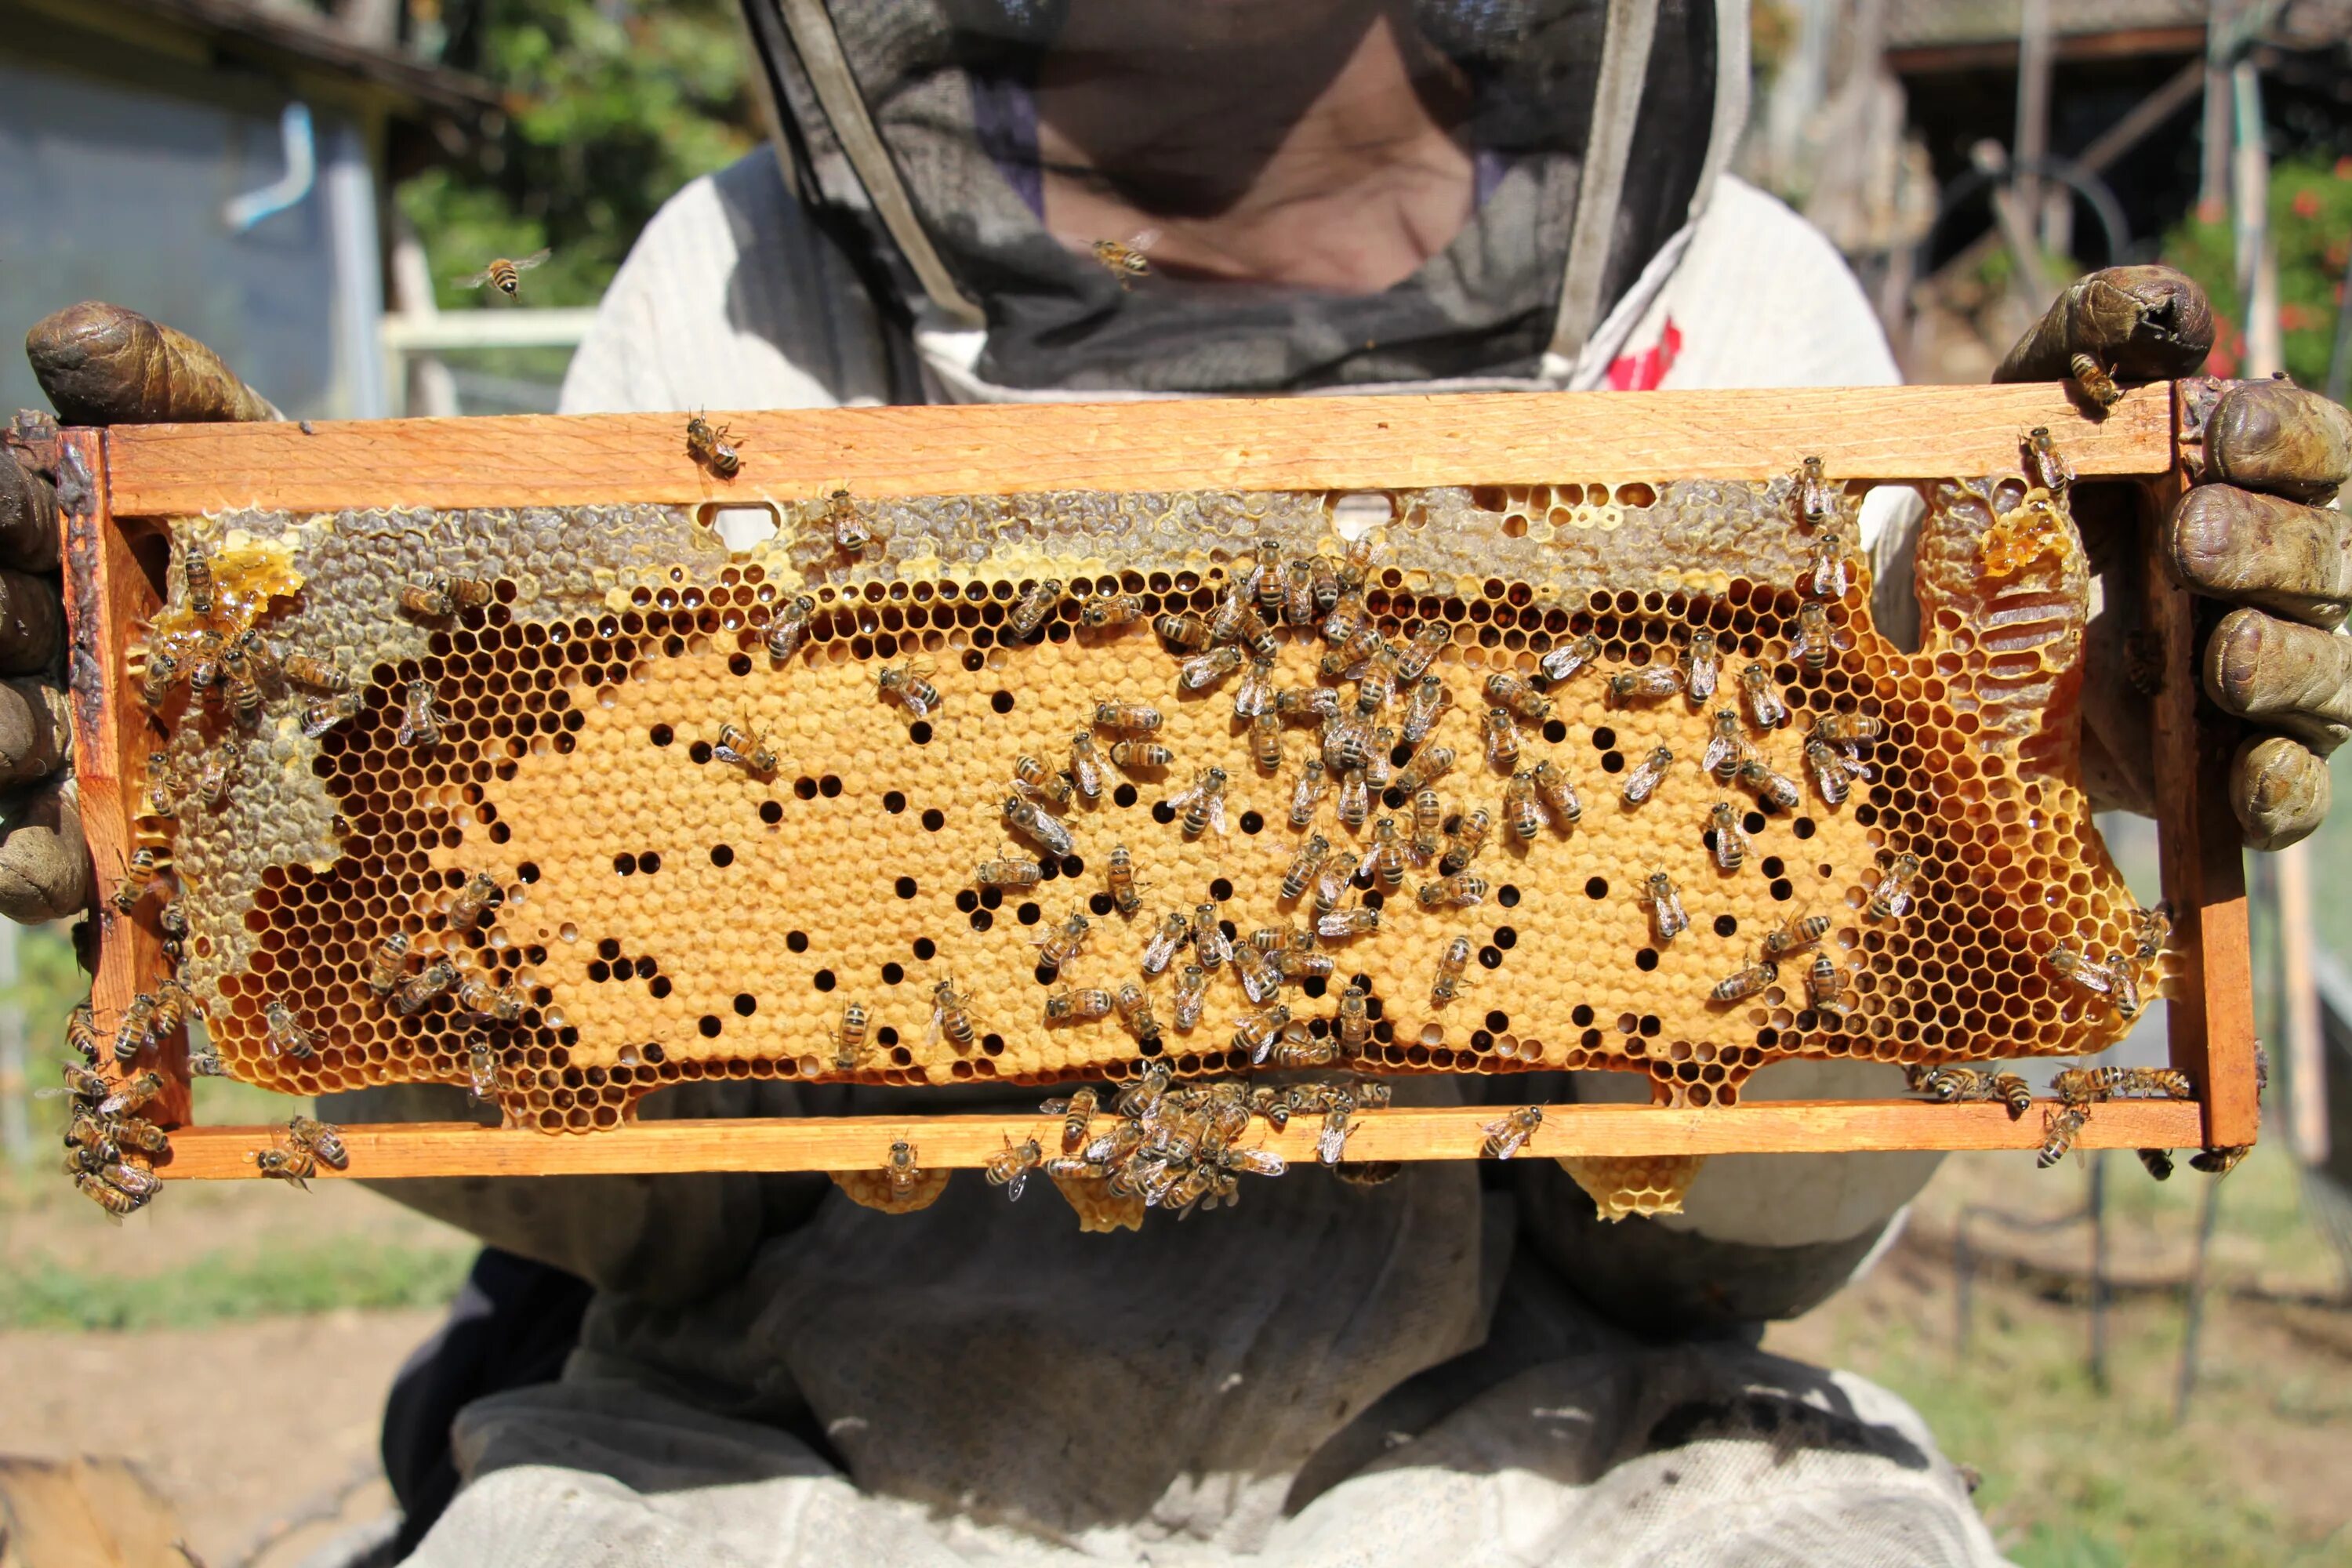 Купить пчелиные рамки. Пчелиная рамка. Пчелиная вощина. Вощина для пчел. Рамки с расплодом в улье.